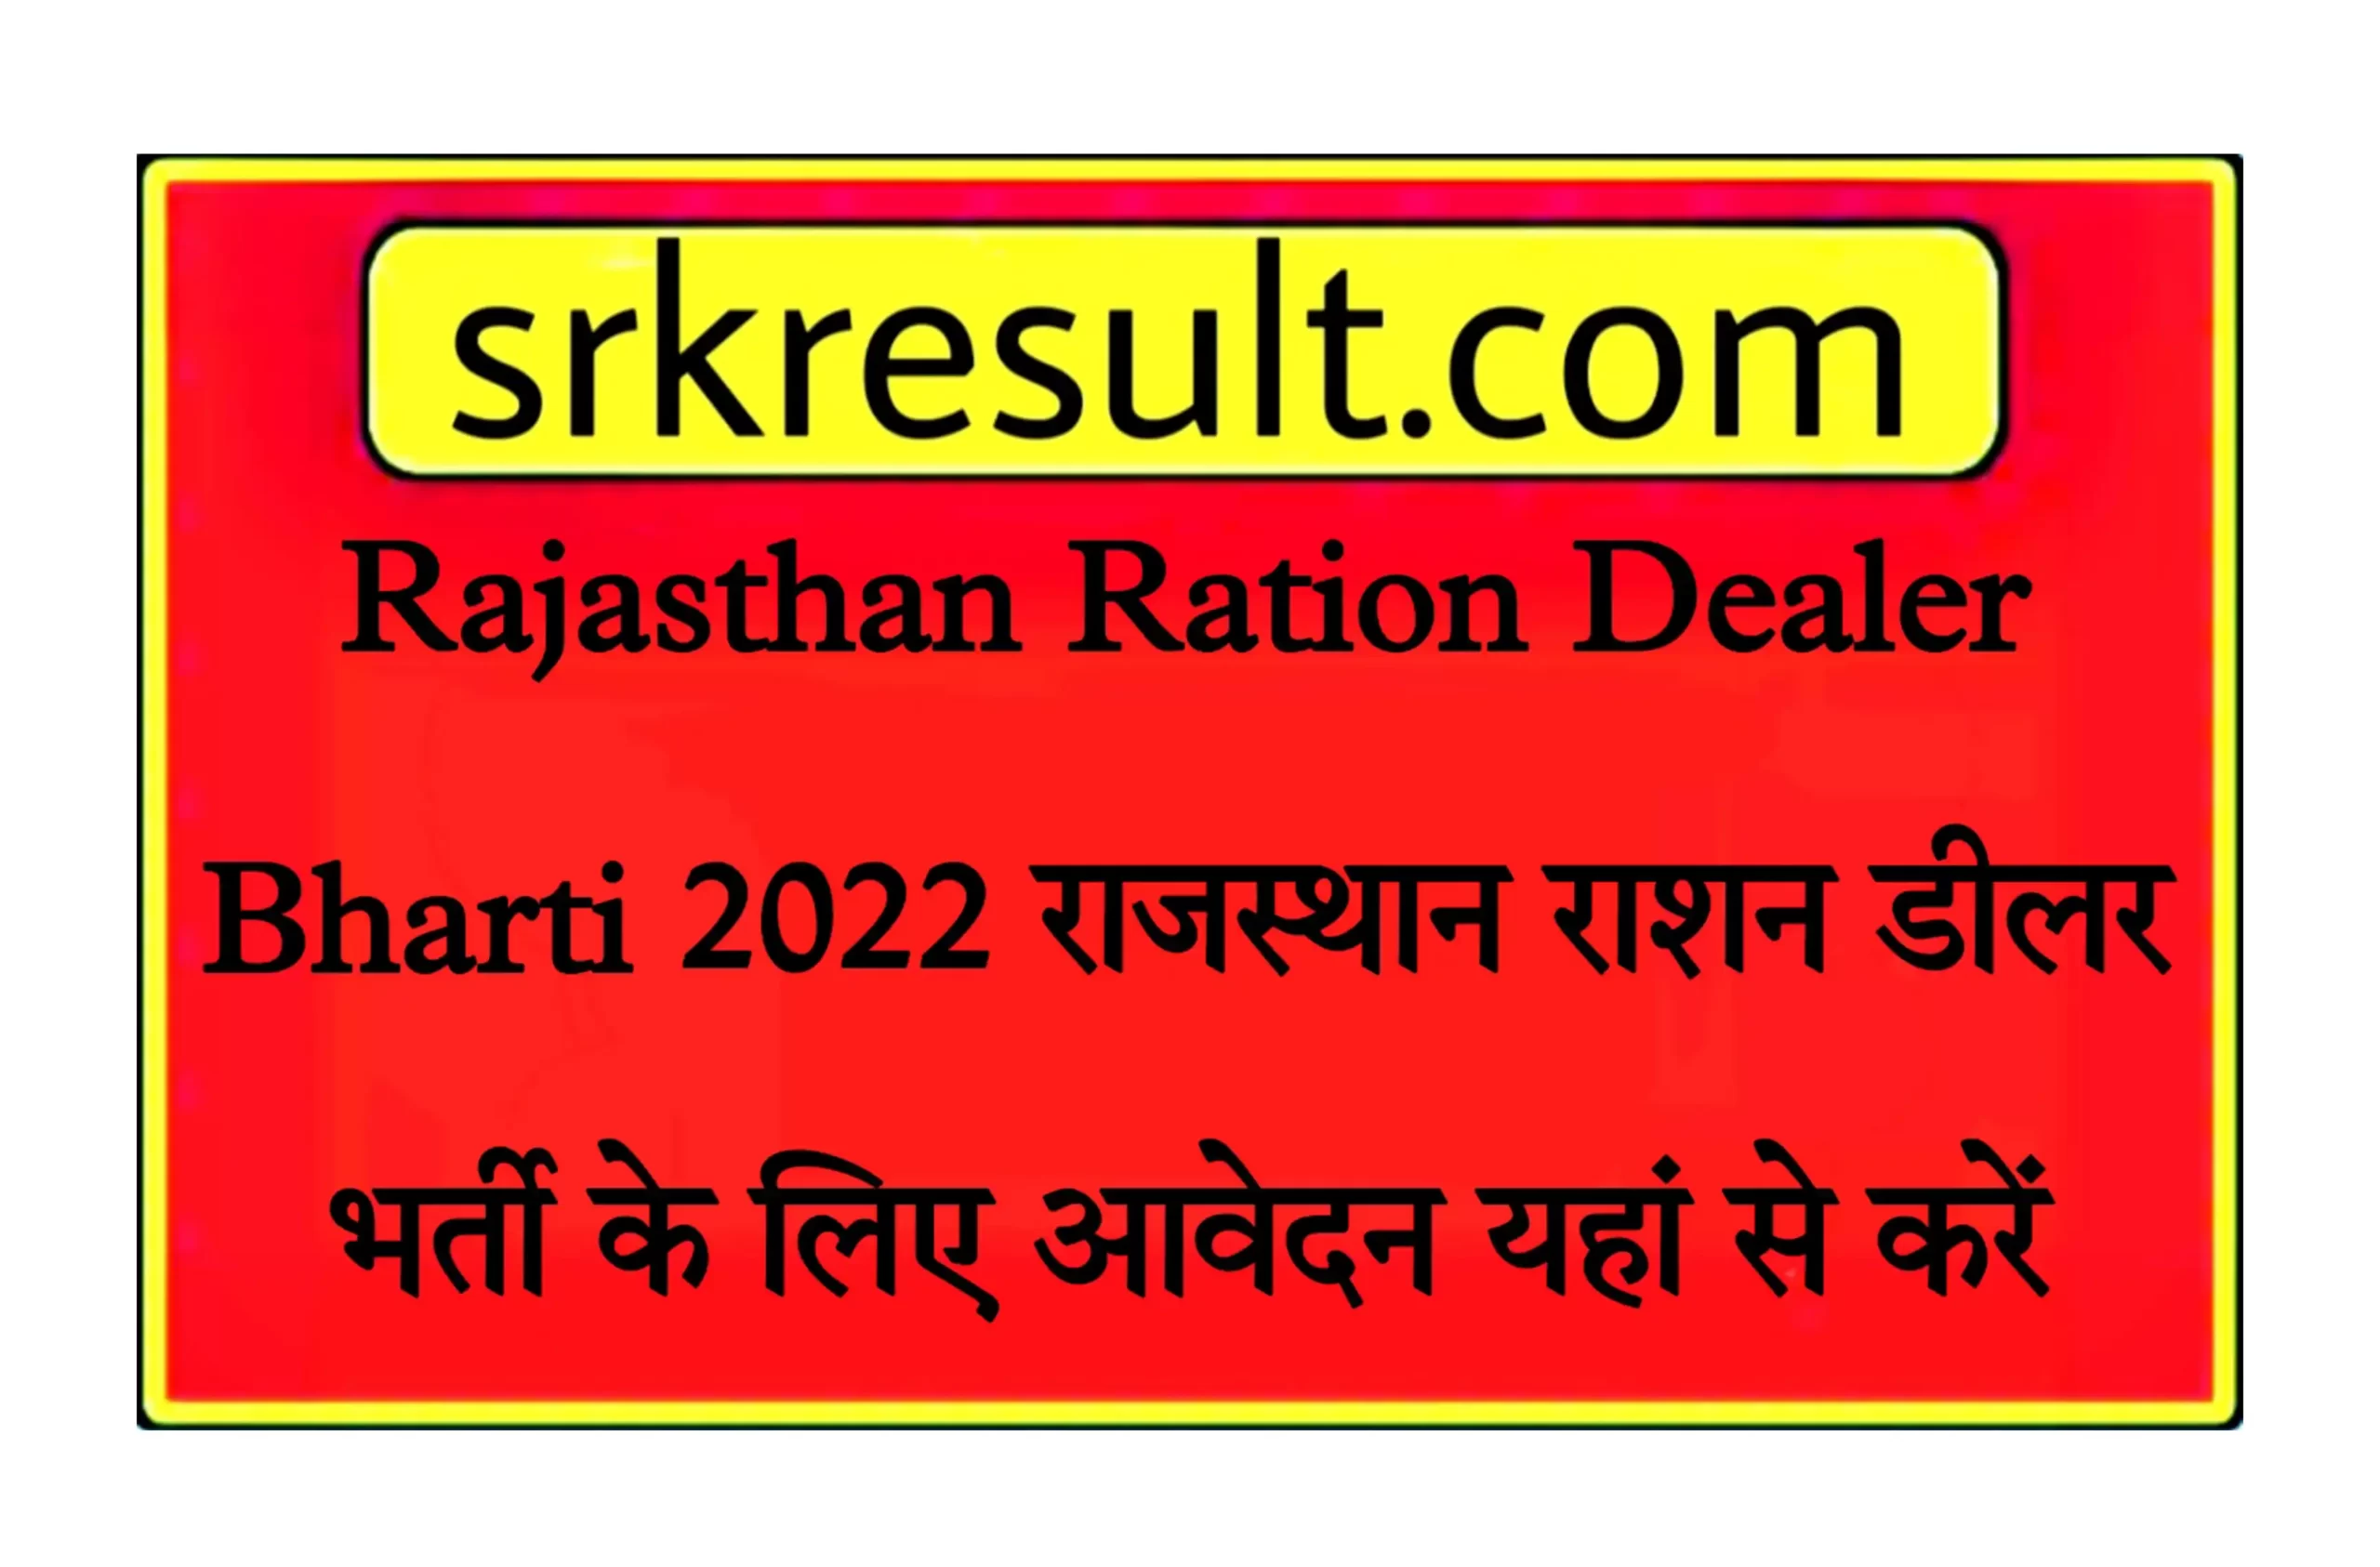 Rajasthan Ration Dealer Bharti 2022 राजस्थान राशन डीलर भर्ती के लिए आवेदन यहां से करें